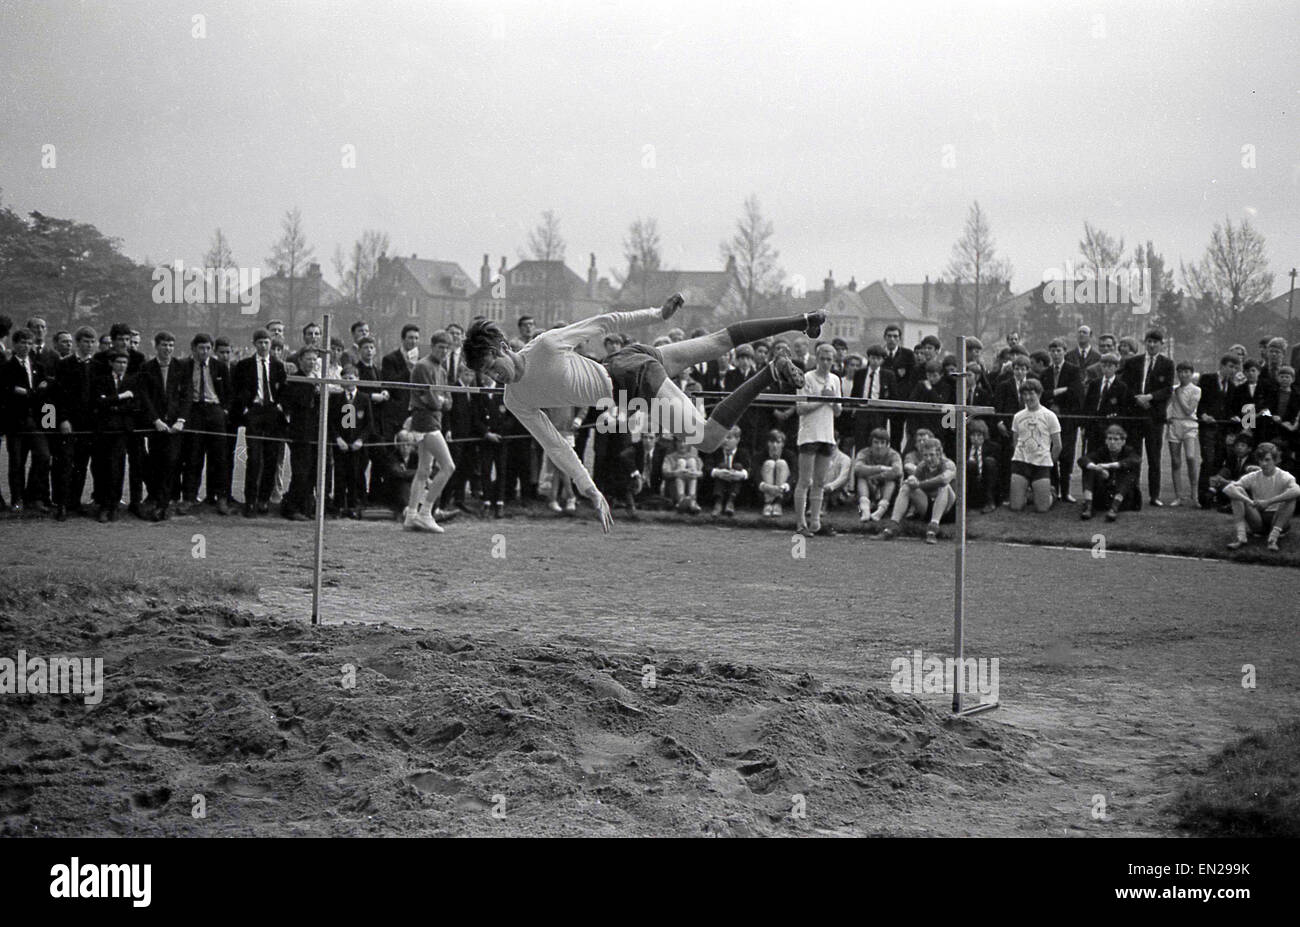 1960er Jahren Geschichtsbild vom Schulsporttag eines Schülers versuchen im Hochsprung mit der Straddle oder Western roll Technik. Stockfoto